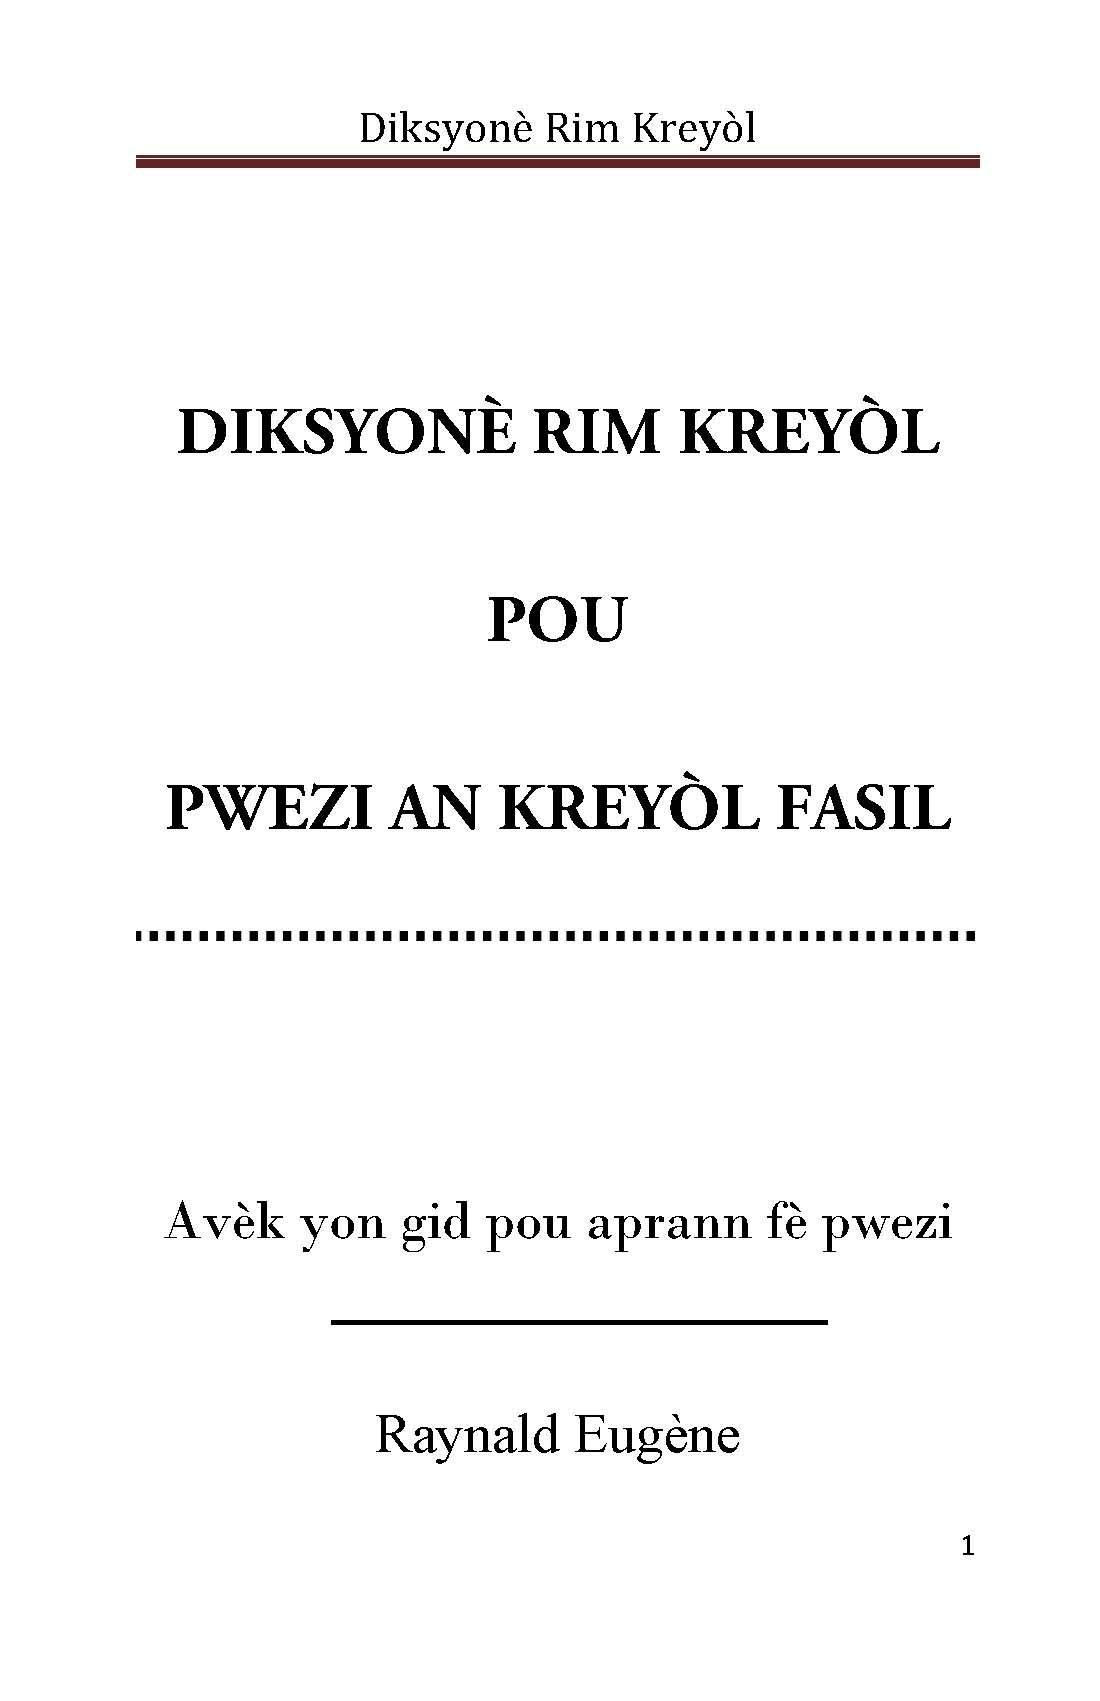 pwezi kreyol pdf